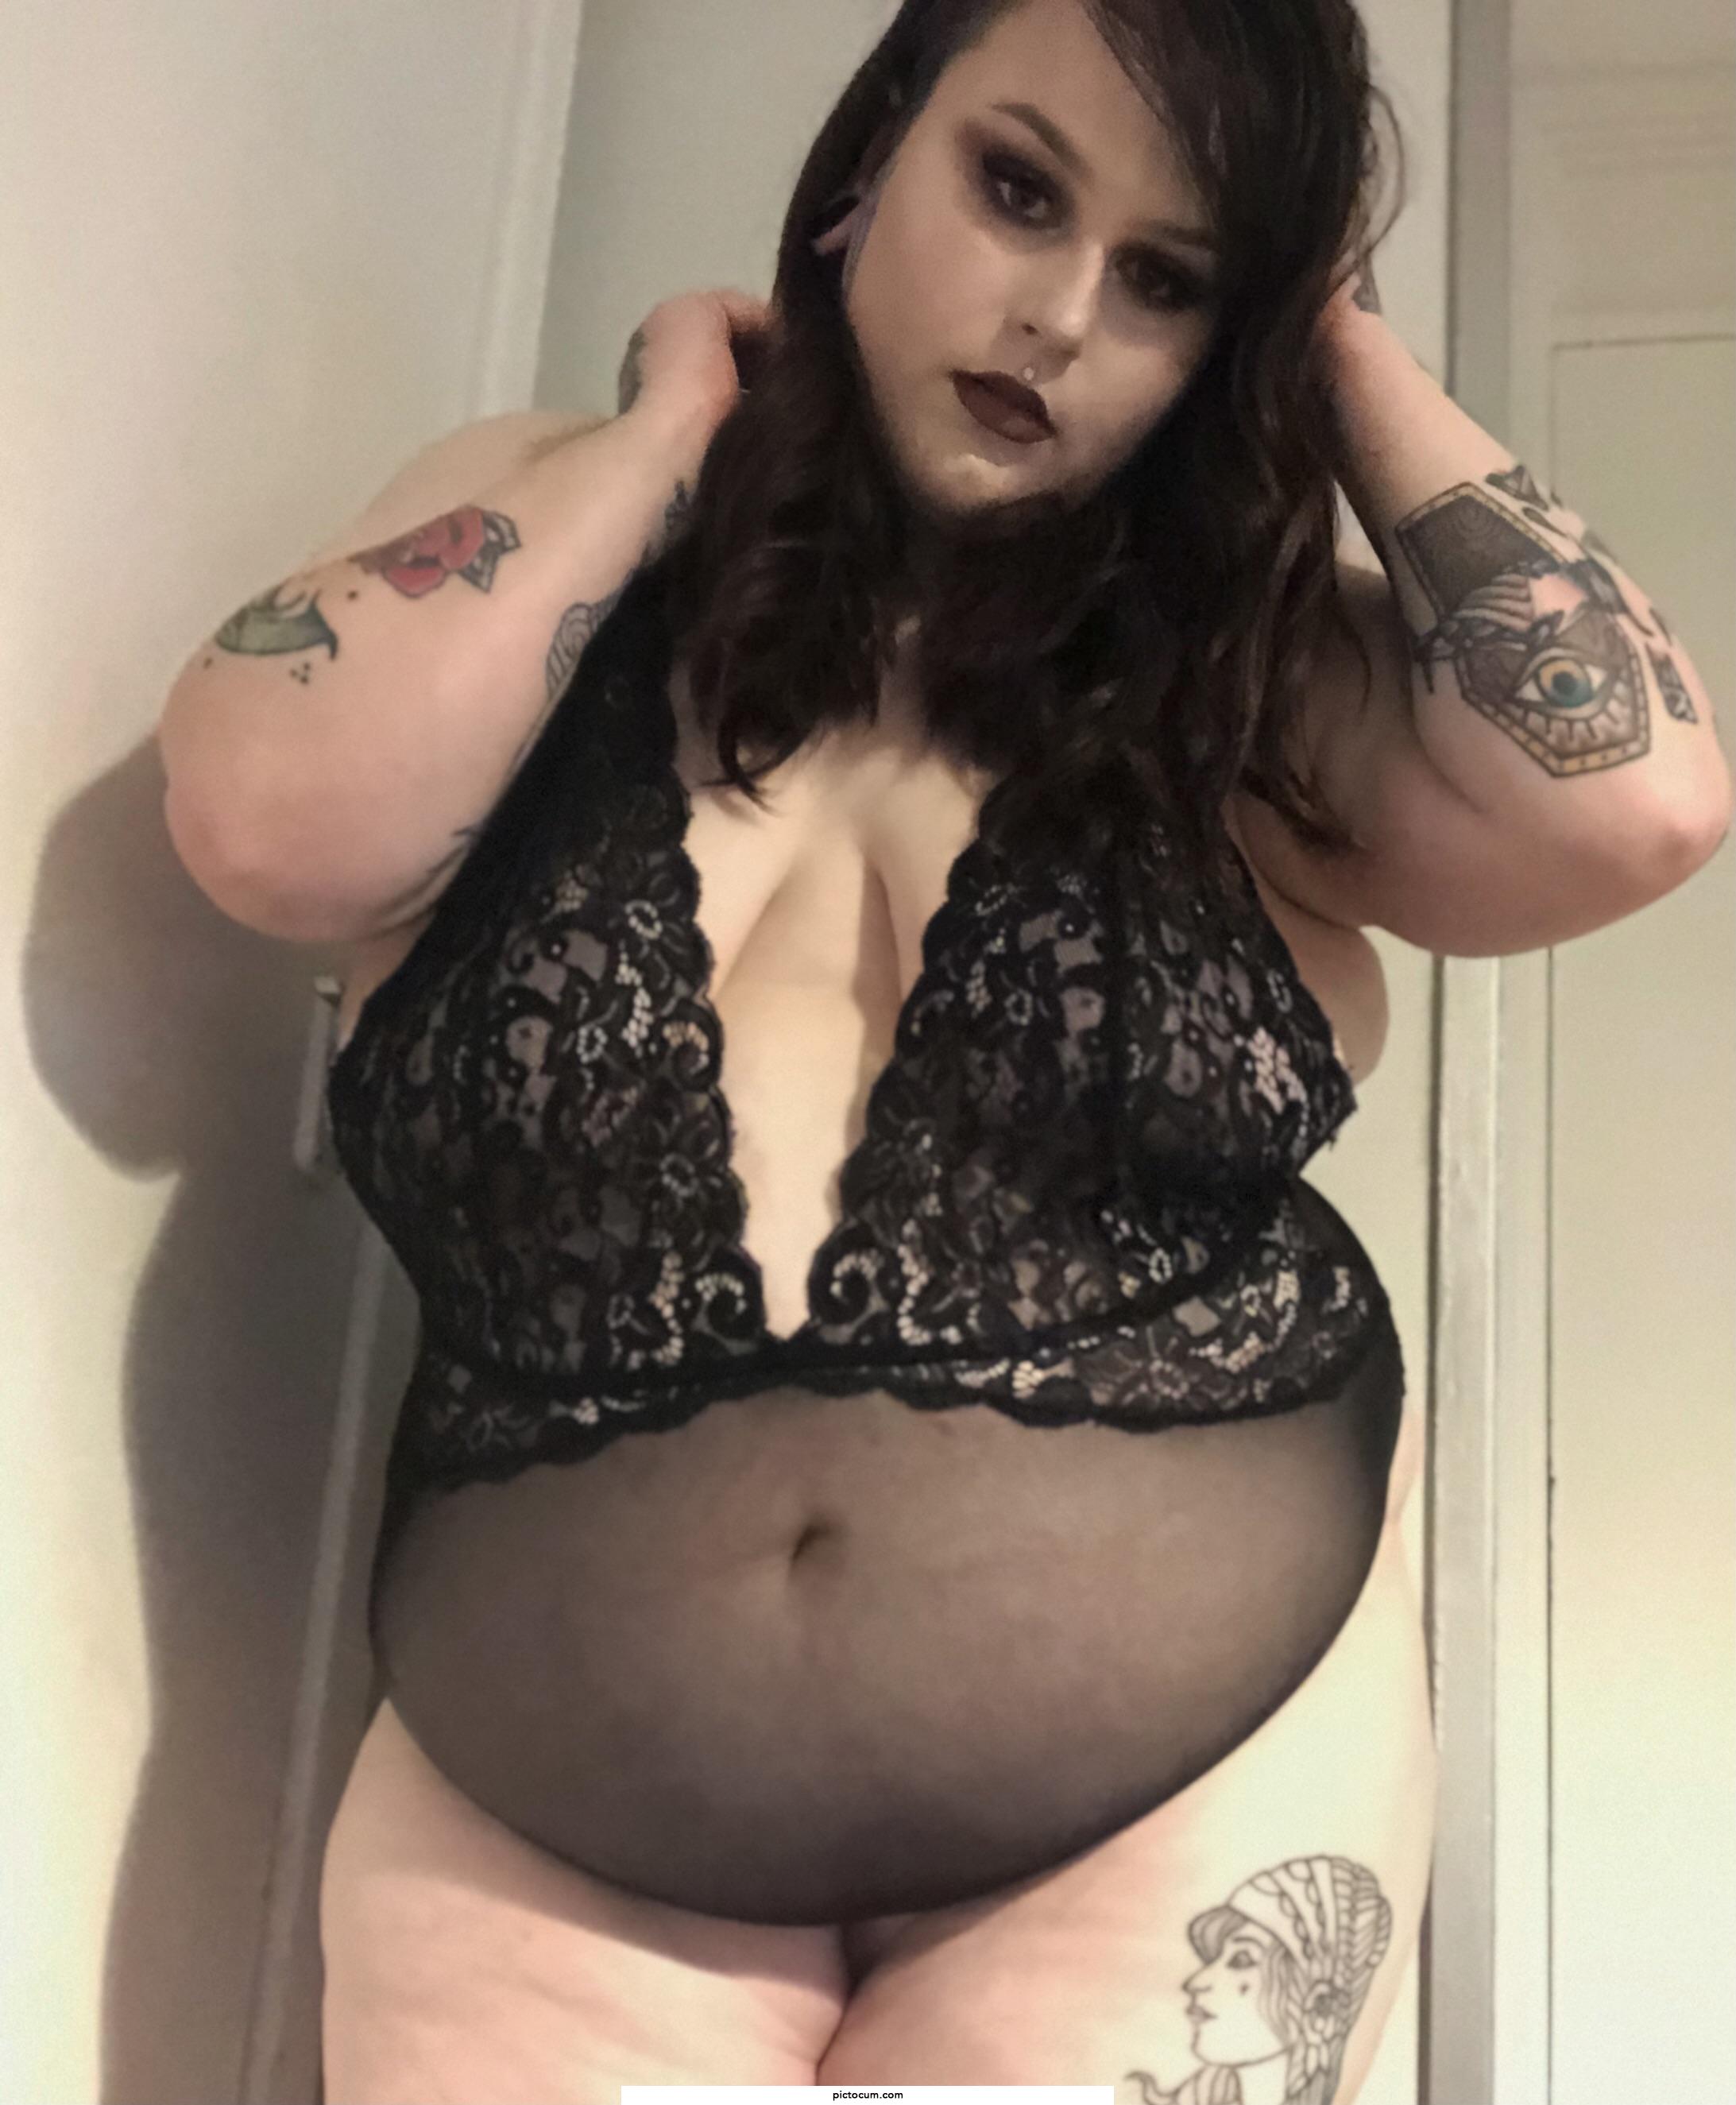 Do you like my curves?